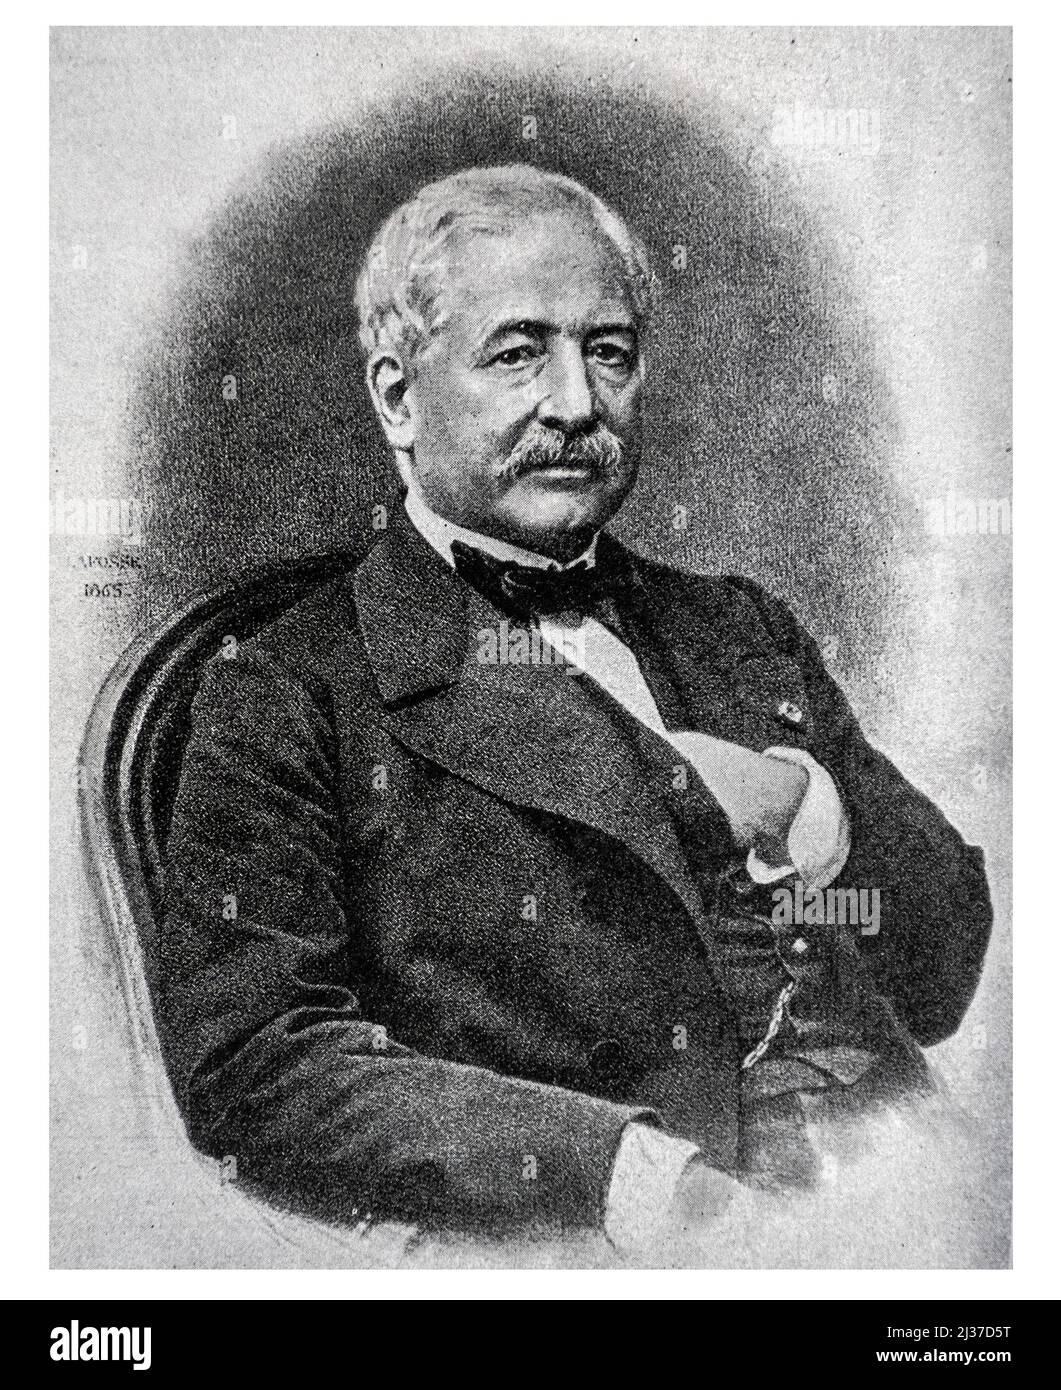 Ferdinand de Lesseps..Ferdinand Marie, vicomte de Lesseps ( 19 de noviembre de 1805 â 7 de diciembre de 1894) fue un diplomático francés y posteriormente desarrollador de la Foto de stock